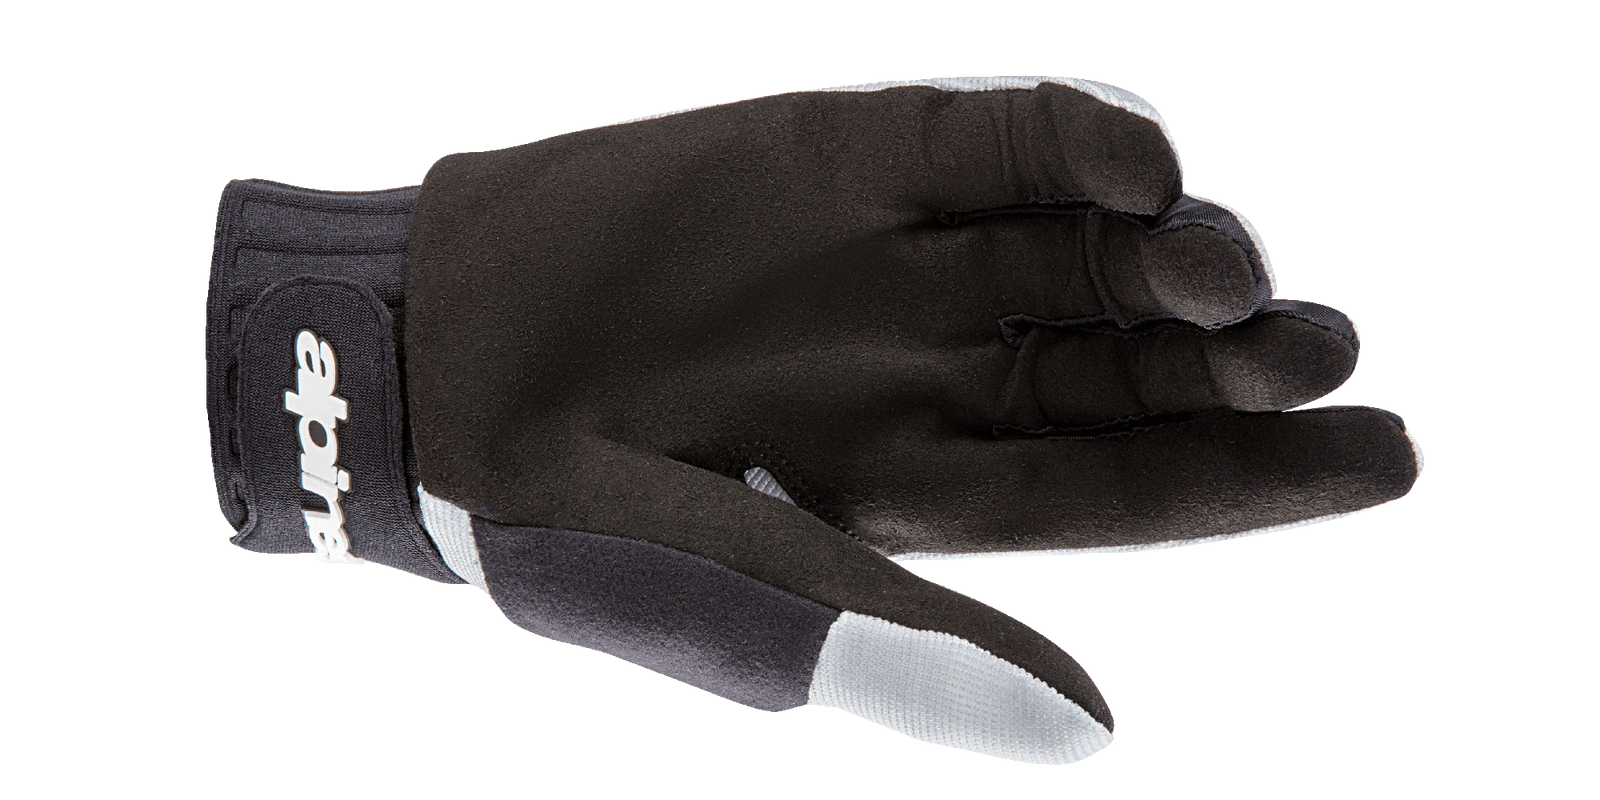 Alps V2 Gloves